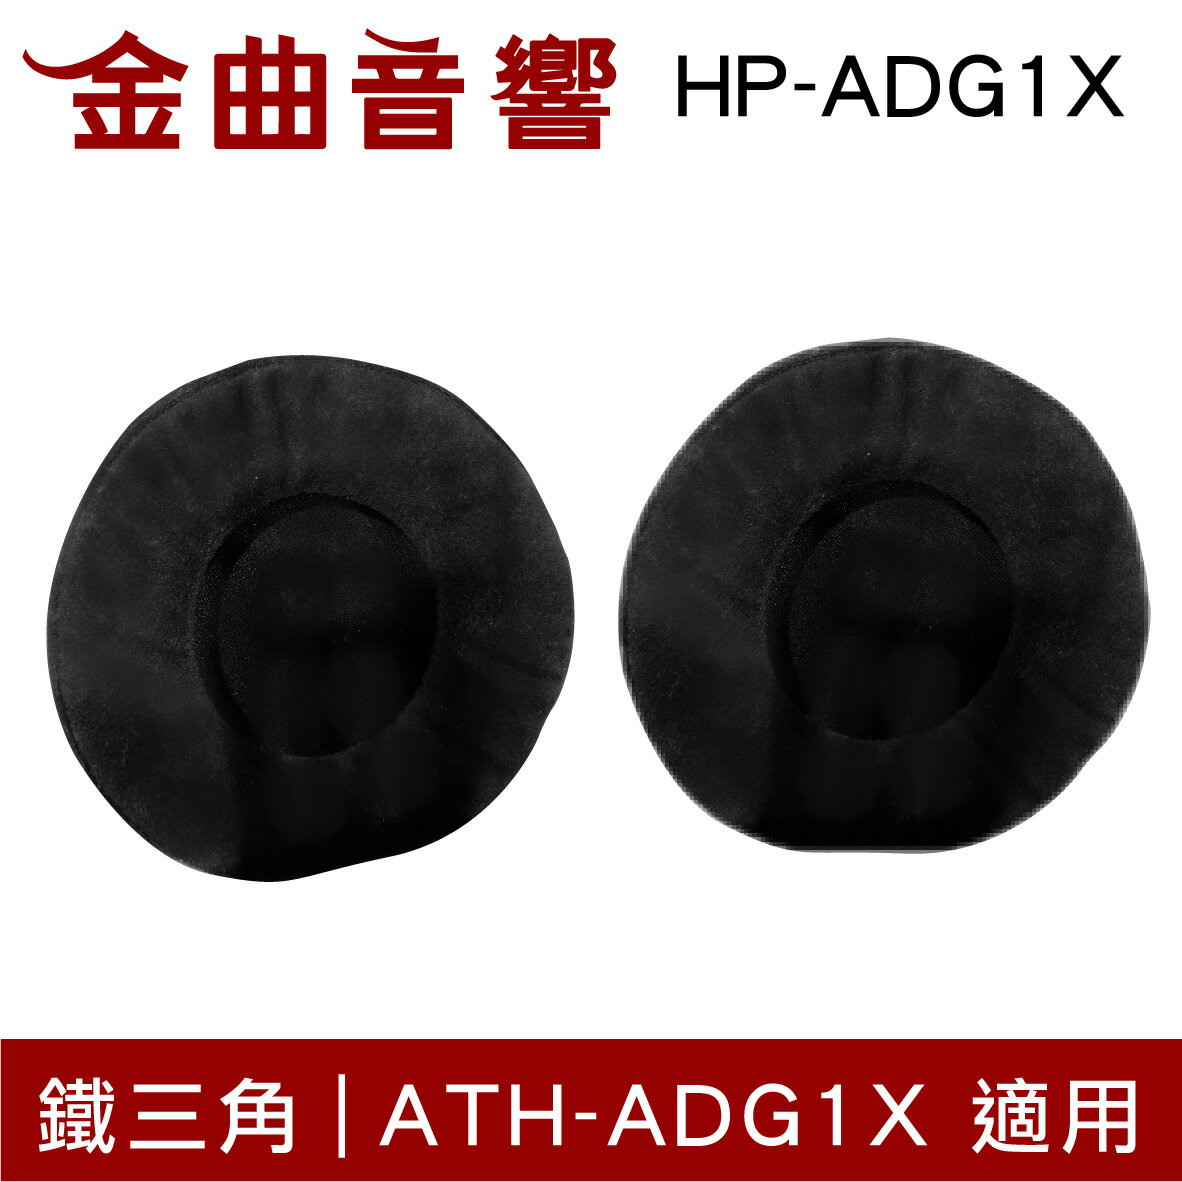 鐵三角 HP-ADG1X 替換耳罩 一對 ATH-ADG1X 適用 | 金曲音響